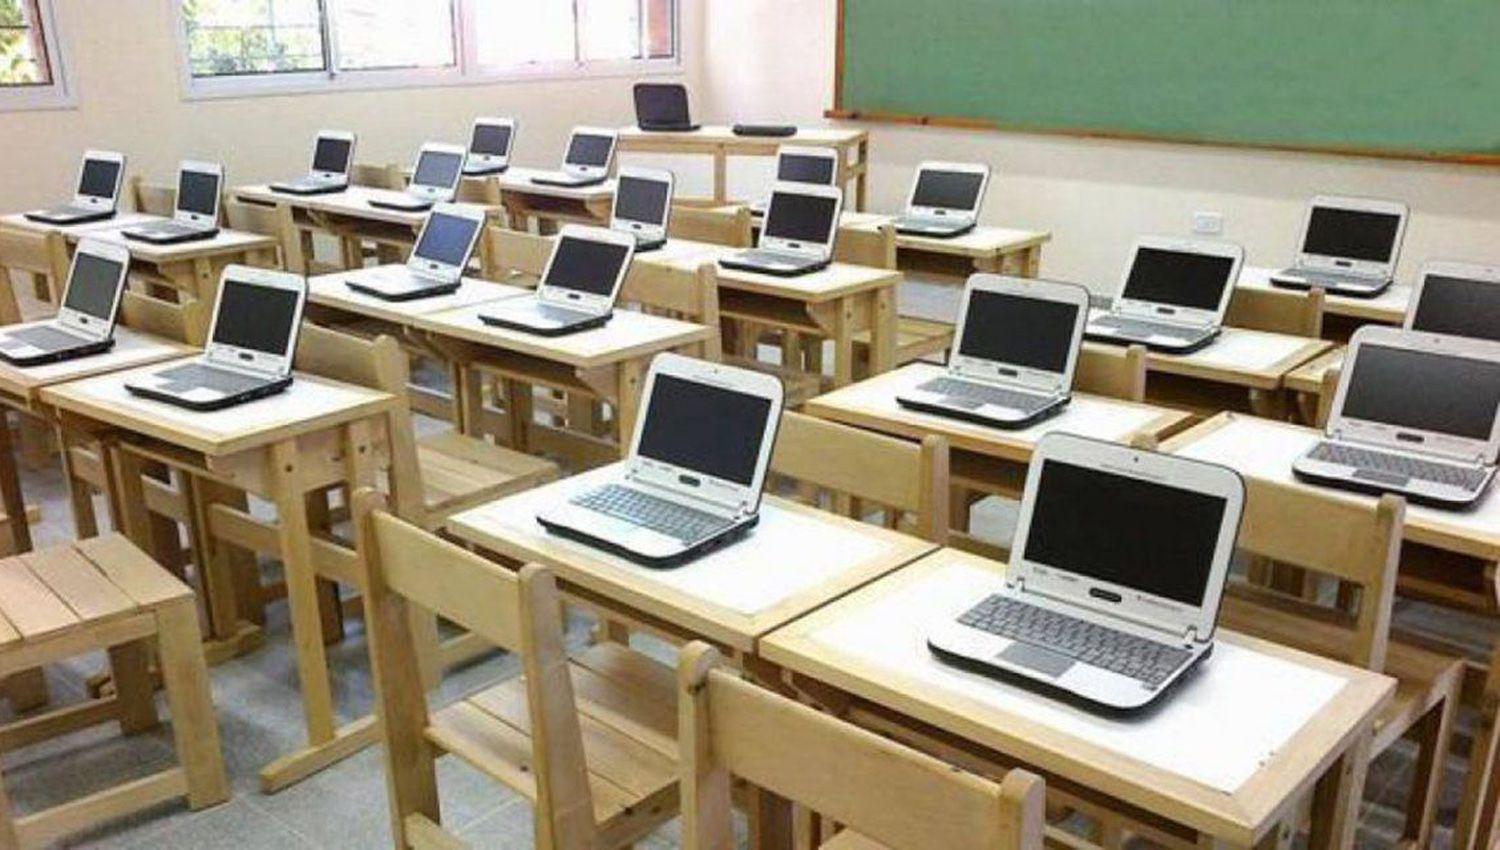 Trotta anuncioacute que se entregaraacuten 500000 computadoras a estudiantes de todo el paiacutes